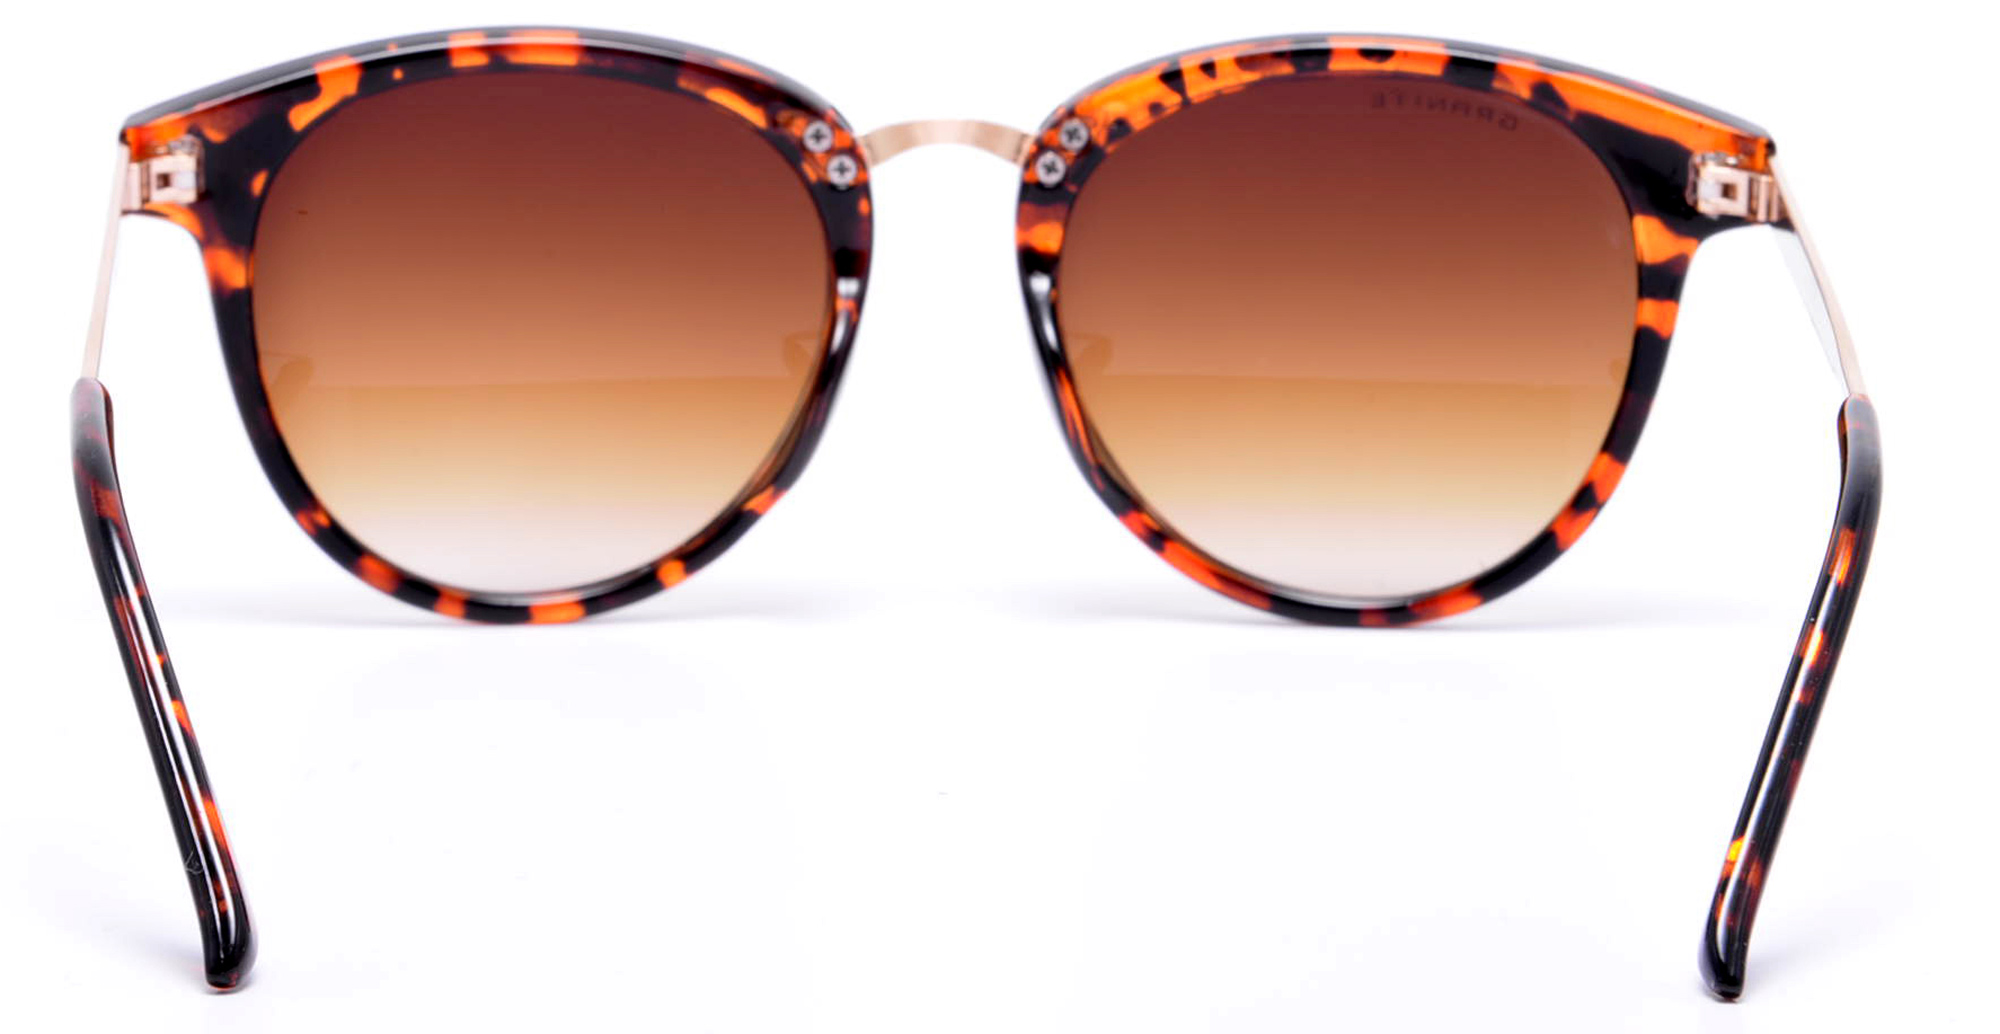 Fashion sunglasses